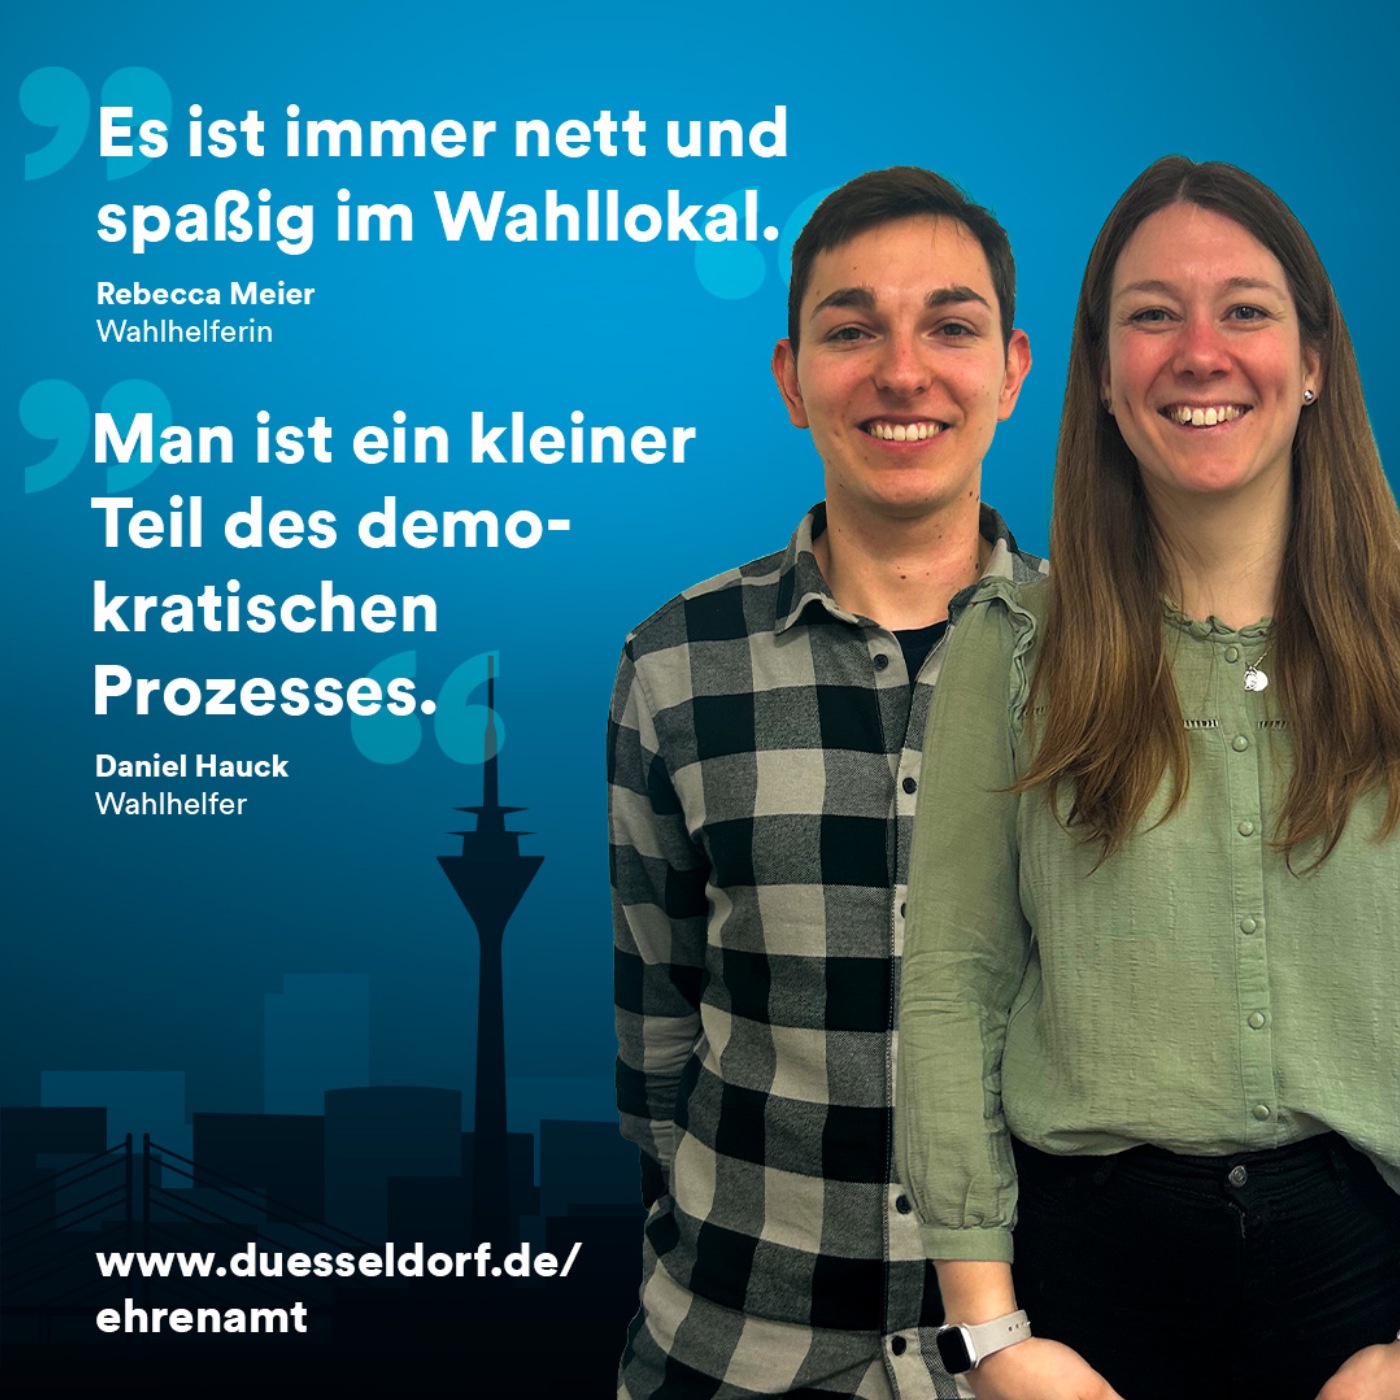 Düsseldorf engagiert sich: Wahlhelfende